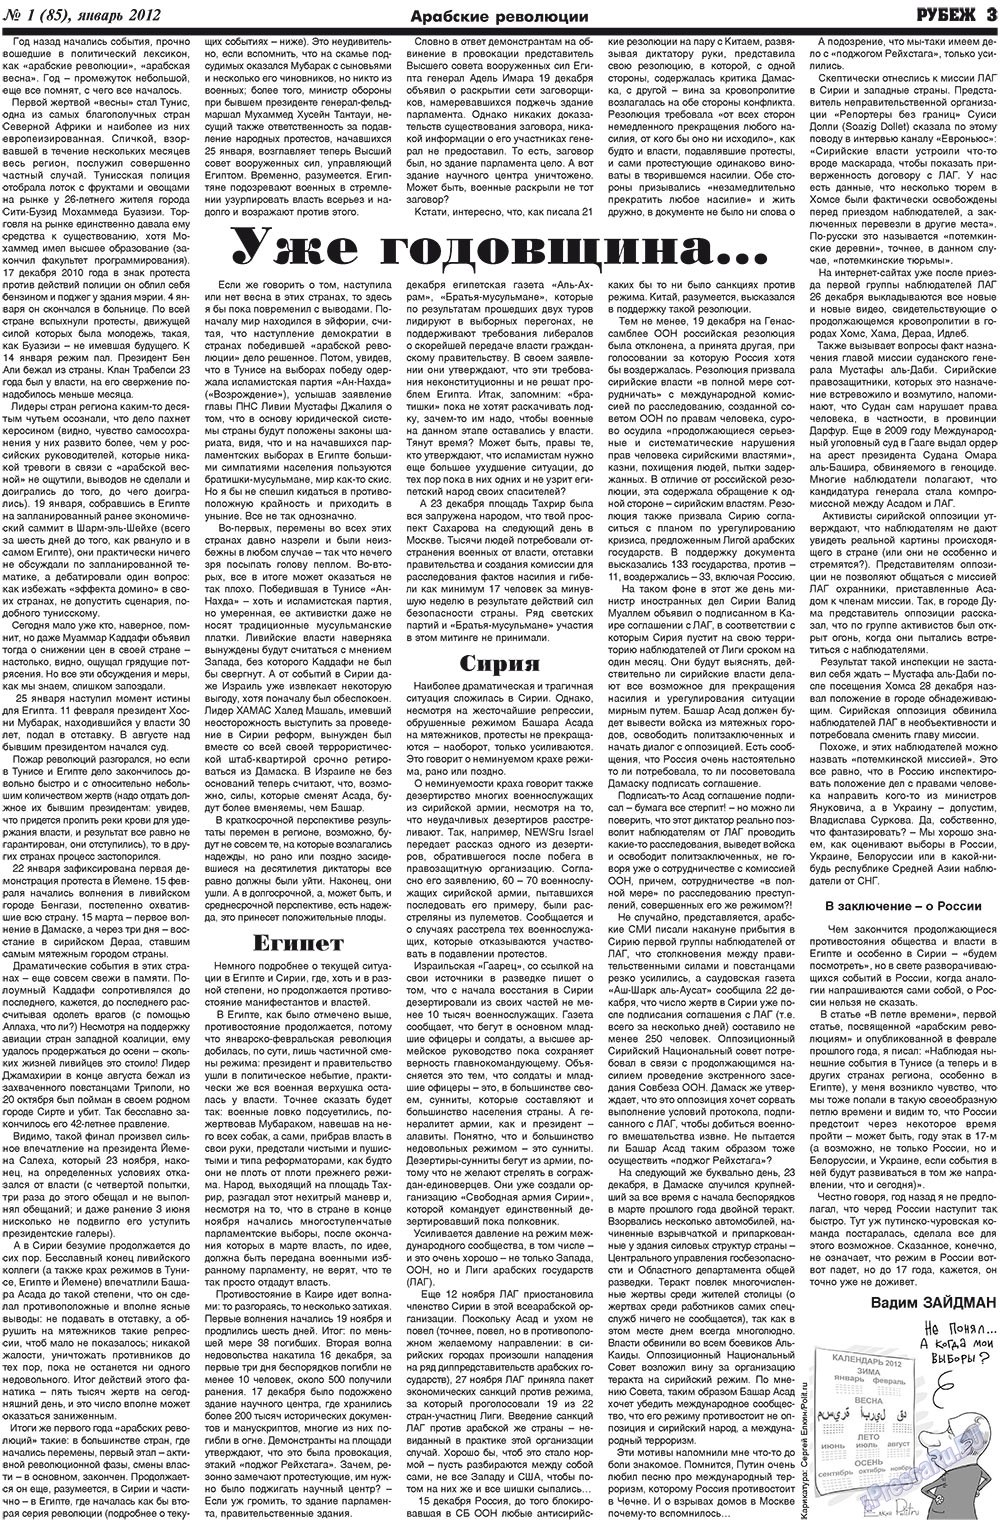 Рубеж (газета). 2012 год, номер 1, стр. 3